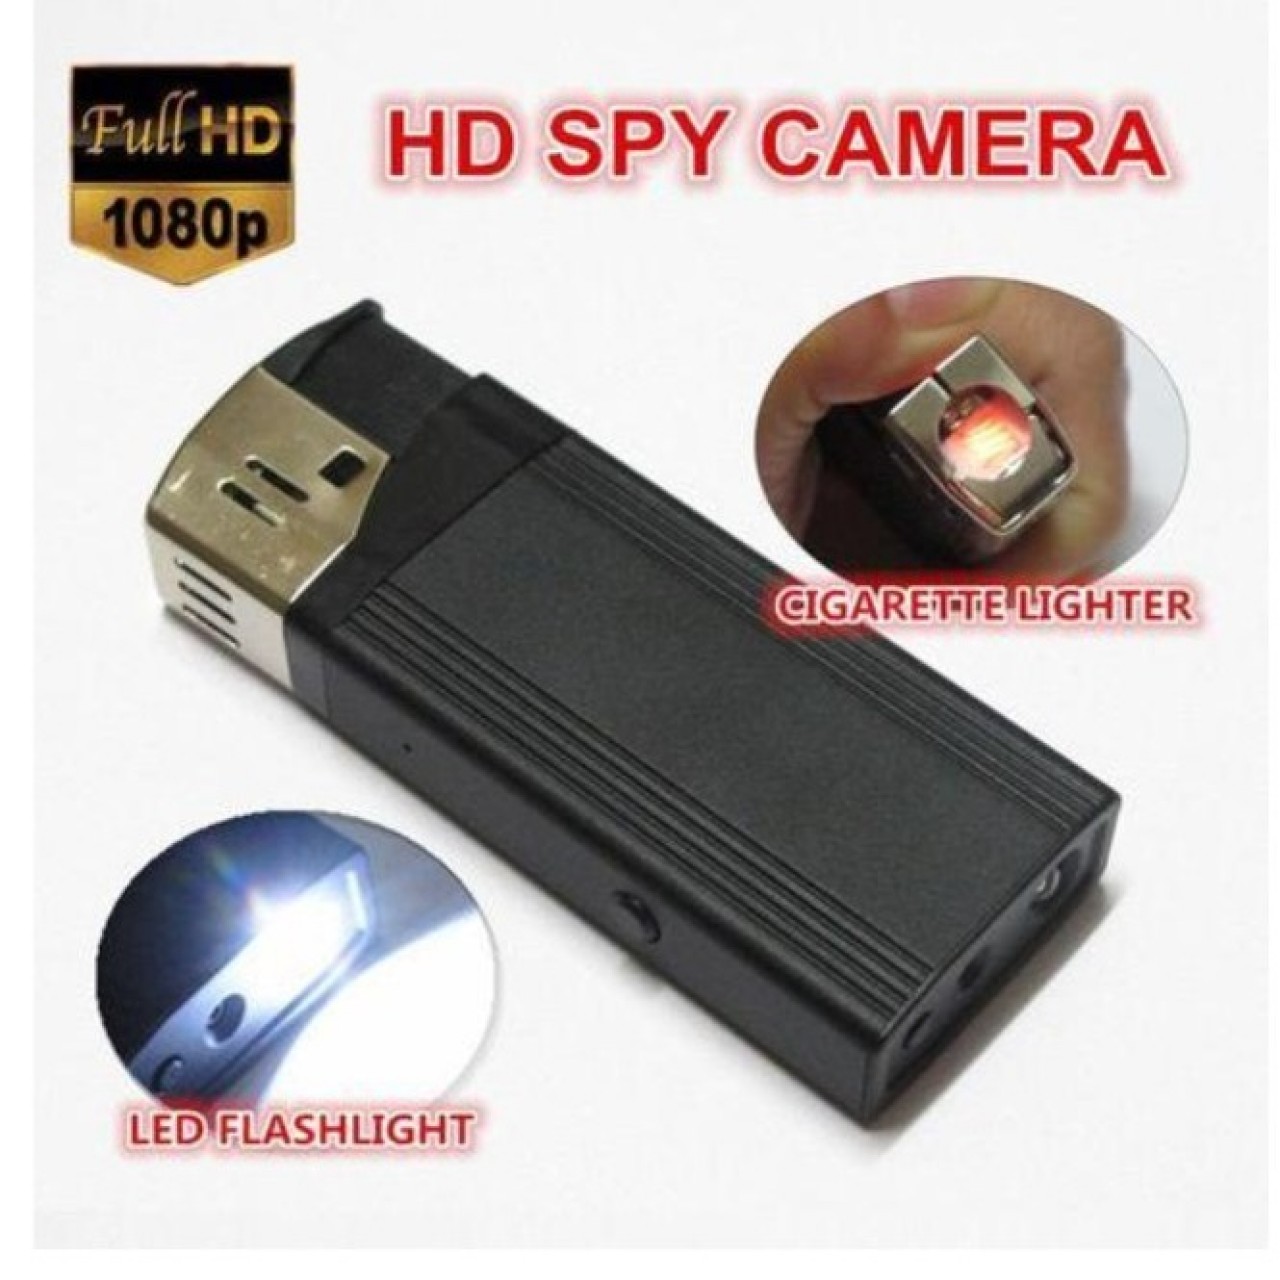 HD 1080P lighter Hidden spy camera with flashlight lighter